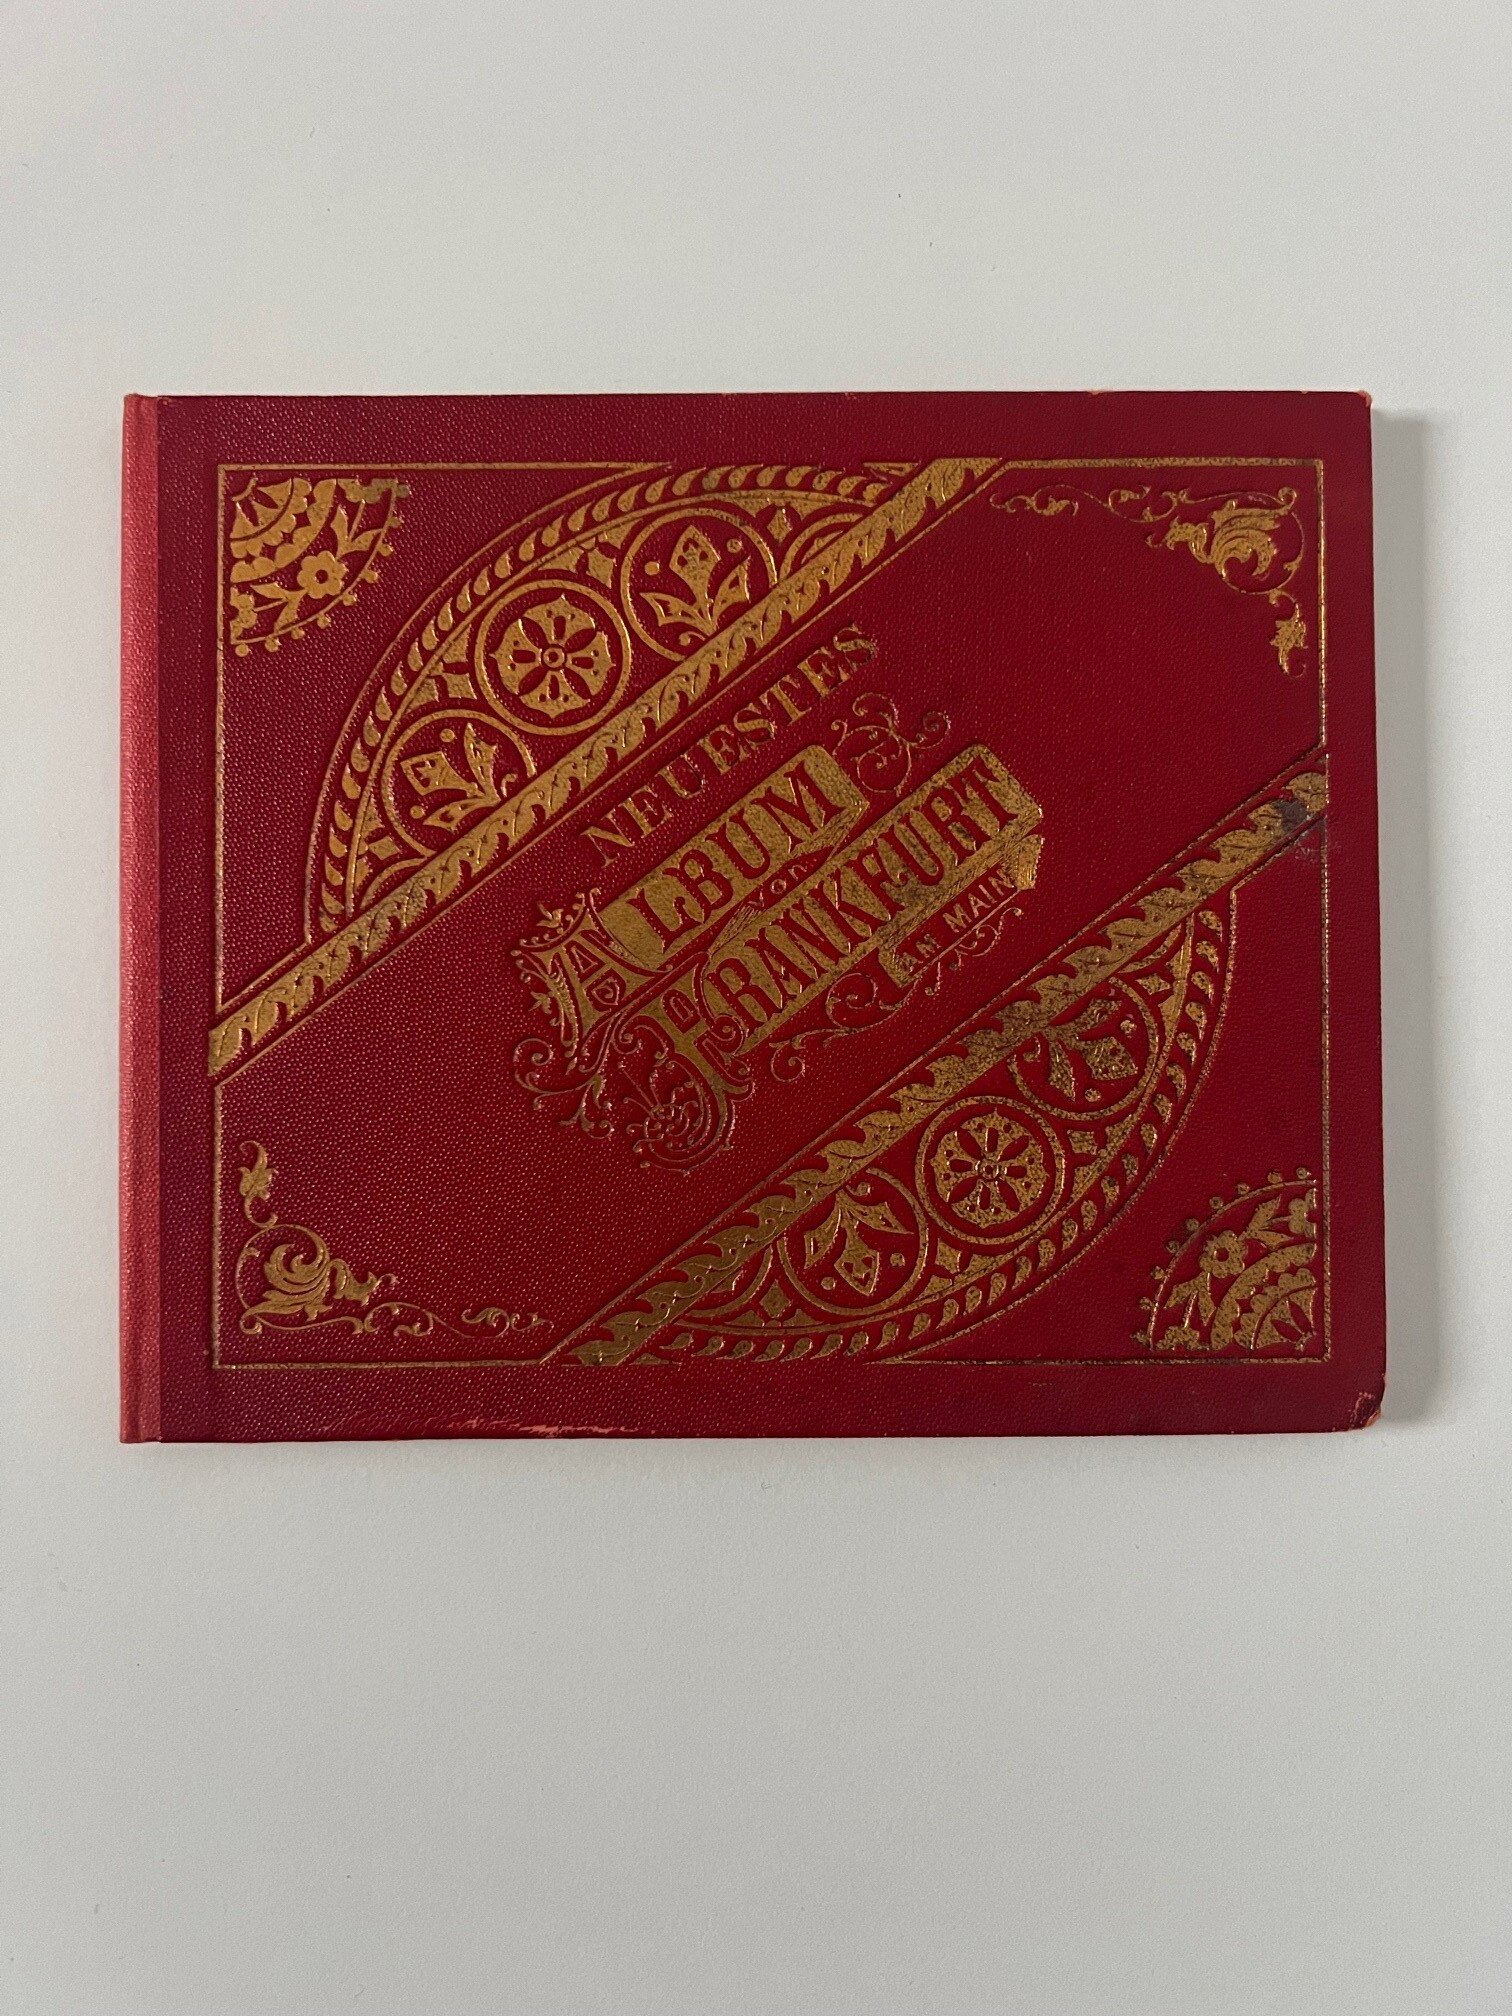 Philipp Frey & Co., Neustes Album von Frankfurt am Main, Leporello mit 18 Lithographien, dat. 1901. (Taunus-Rhein-Main - Regionalgeschichtliche Sammlung Dr. Stefan Naas CC BY-NC-SA)